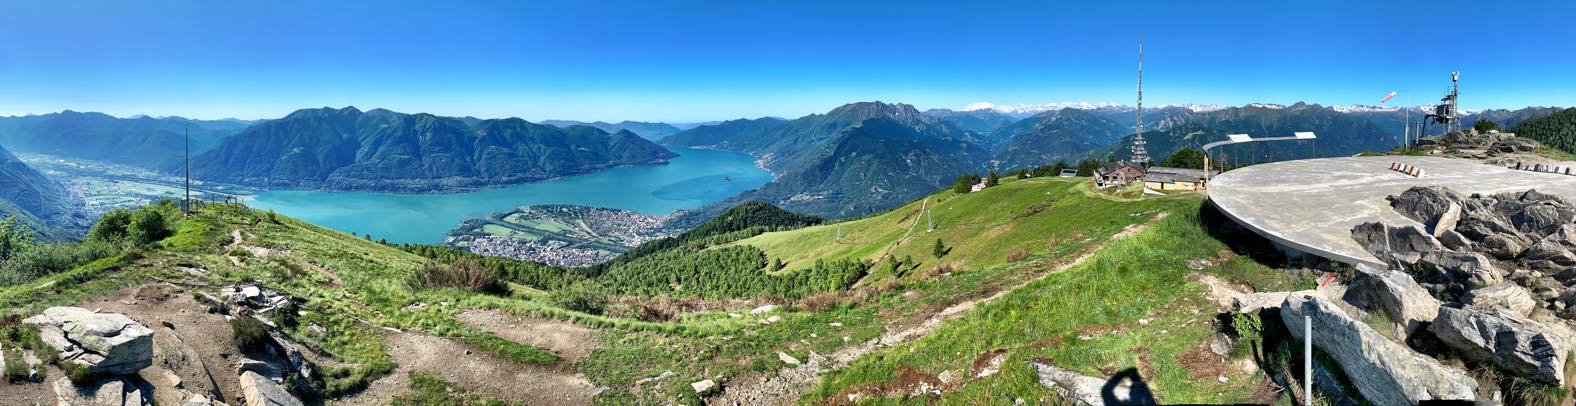 Il Lago Maggiore, Ascona, Locarno e le Alpi svizzere visti da Cardada.